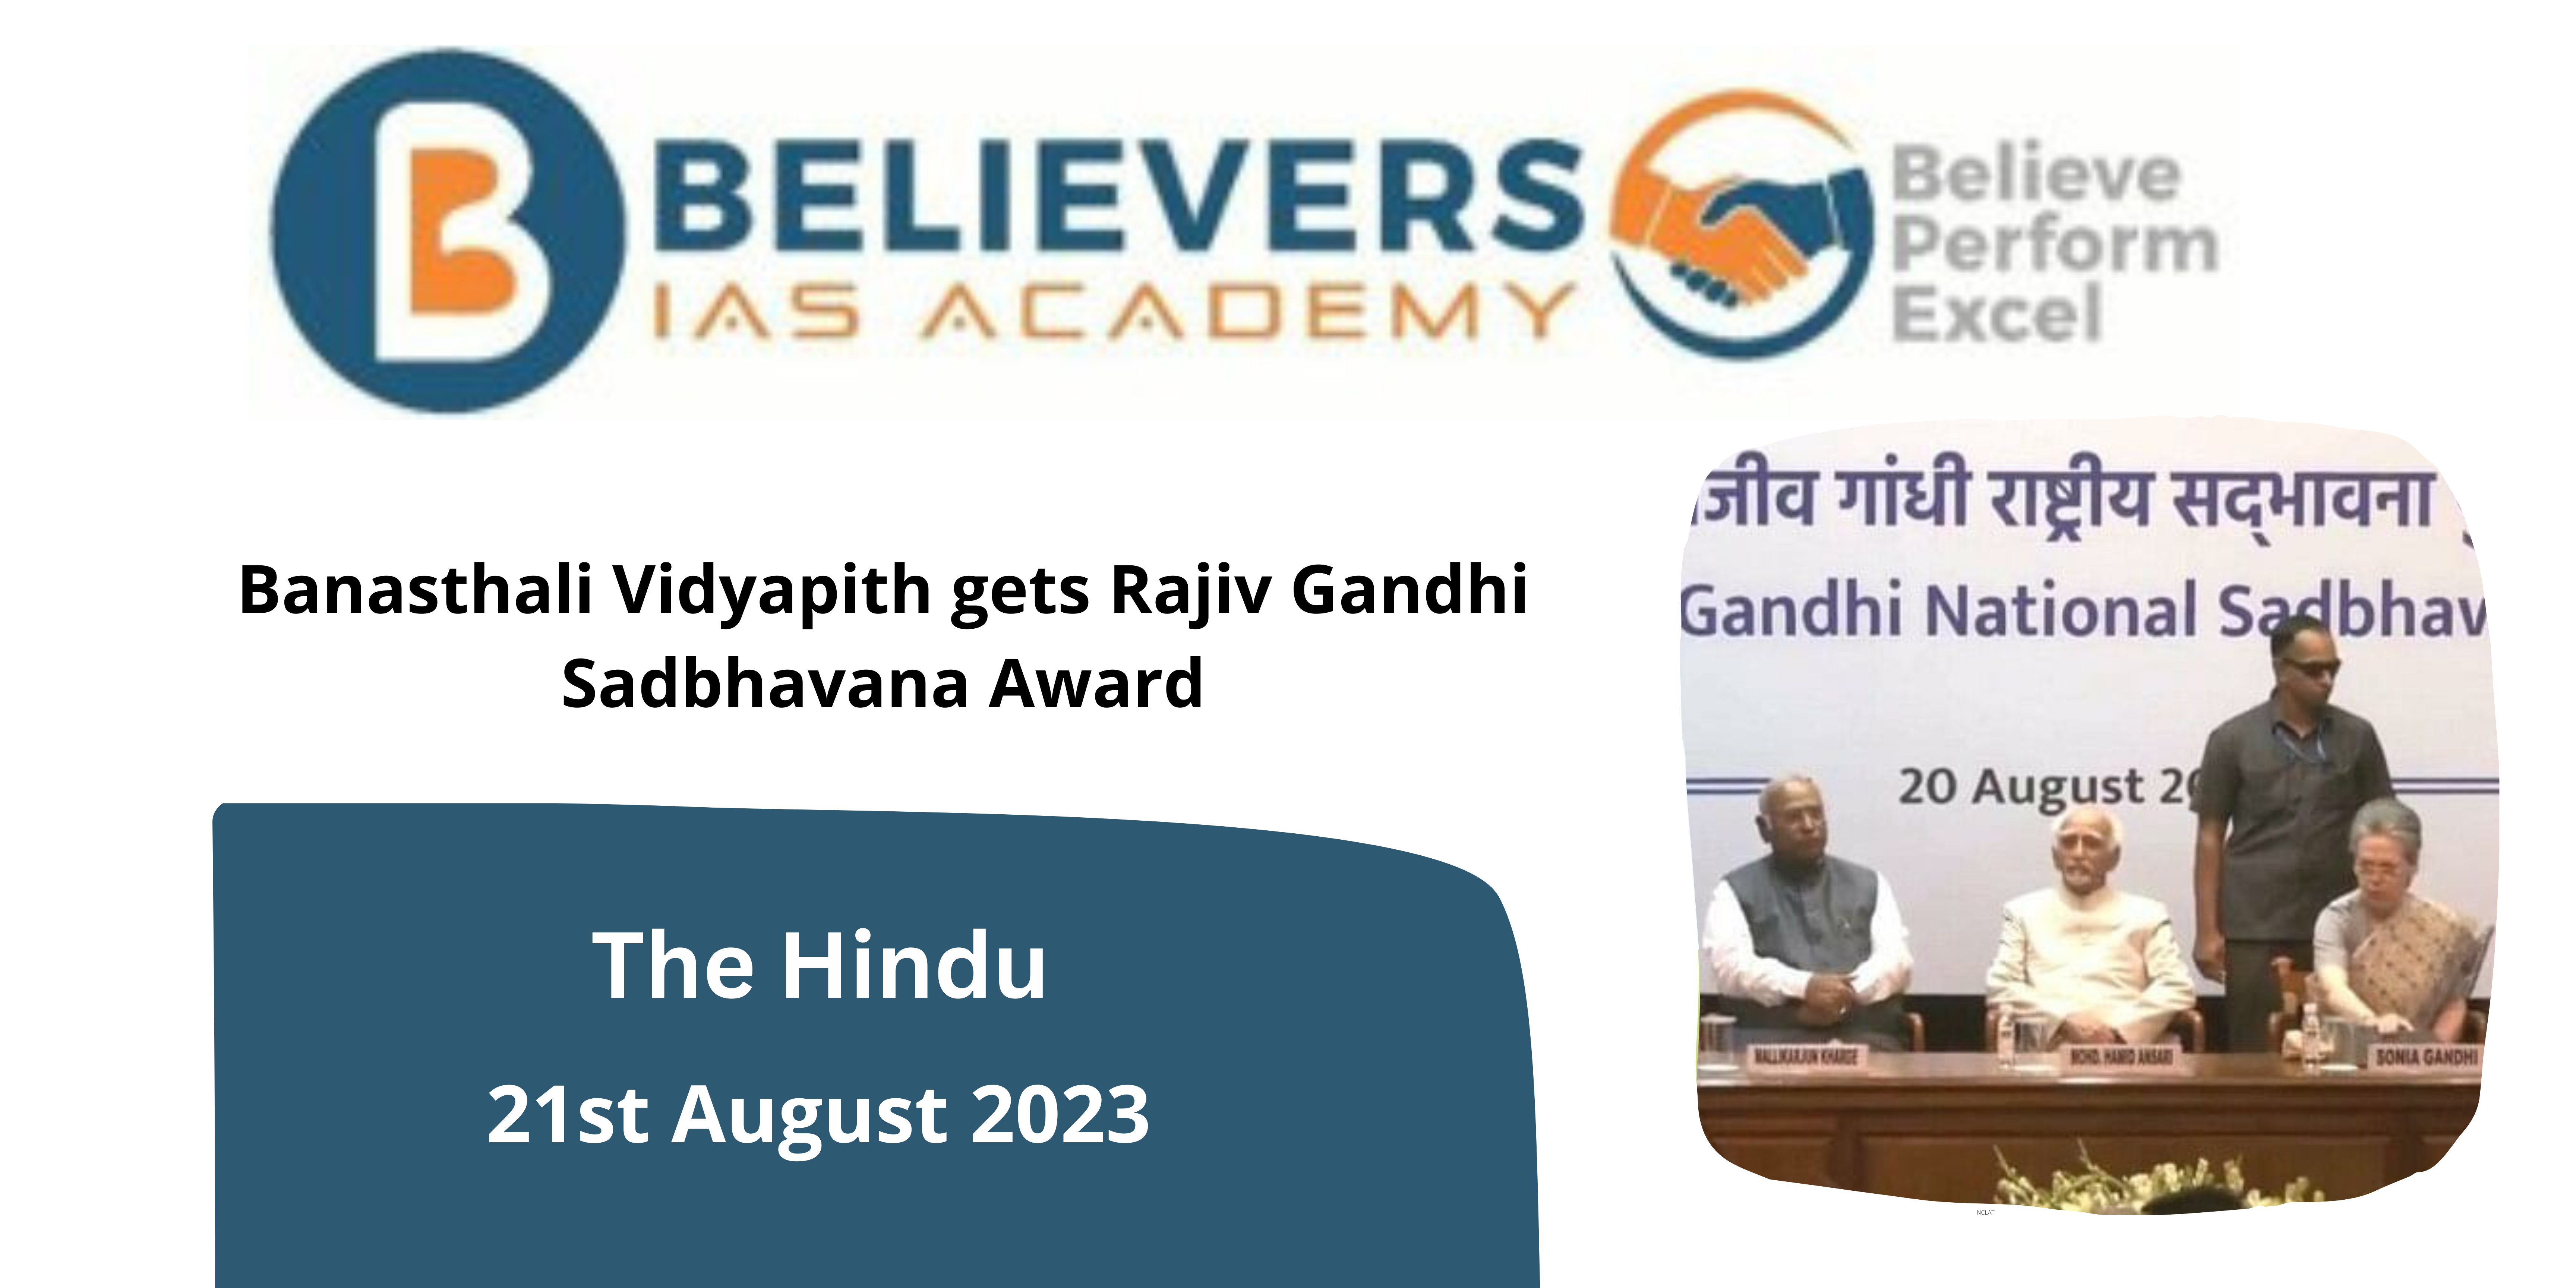 Banasthali Vidyapith gets Rajiv Gandhi Sadbhavana Award